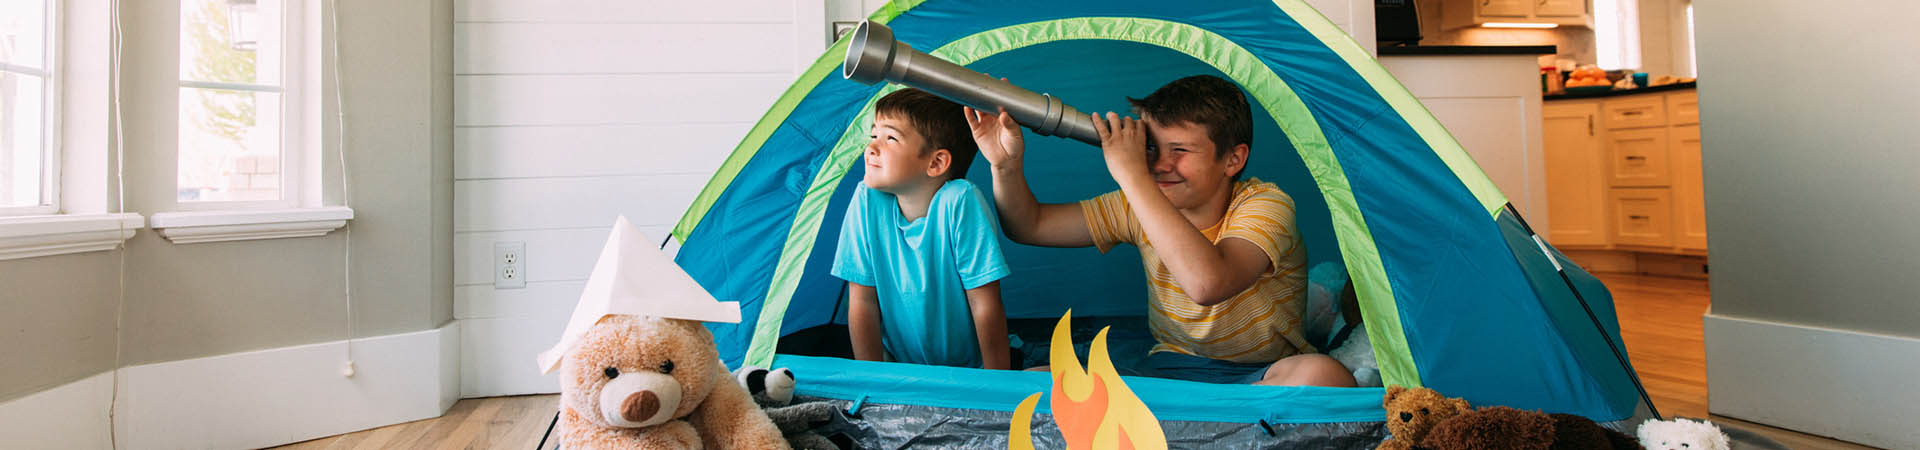 Il valore del gioco: bambini giocano in una tenda in salotto.